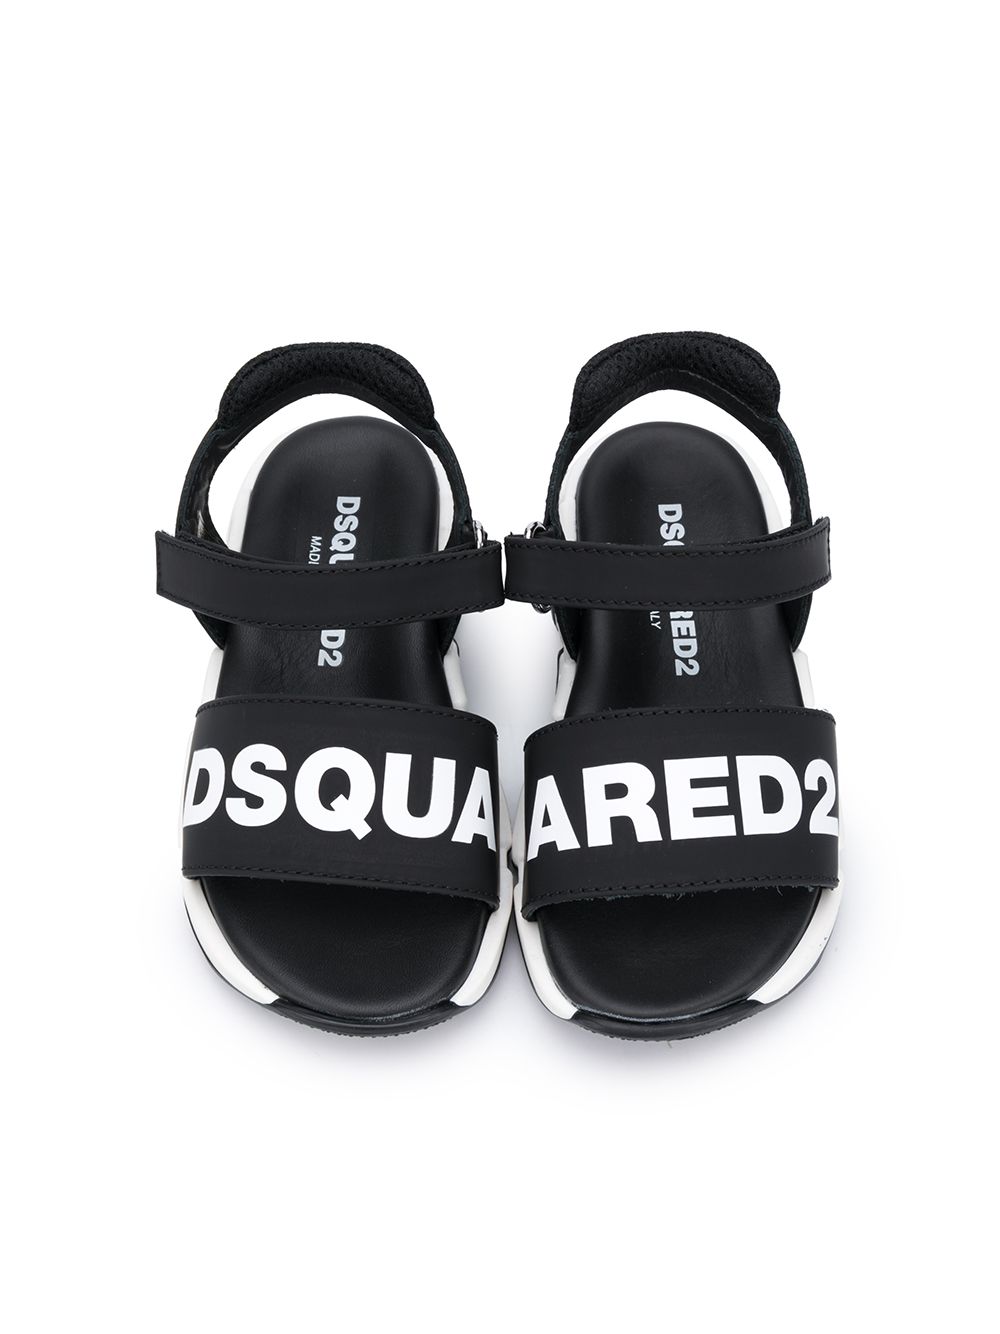 фото Dsquared2 kids сандалии на липучках с логотипом